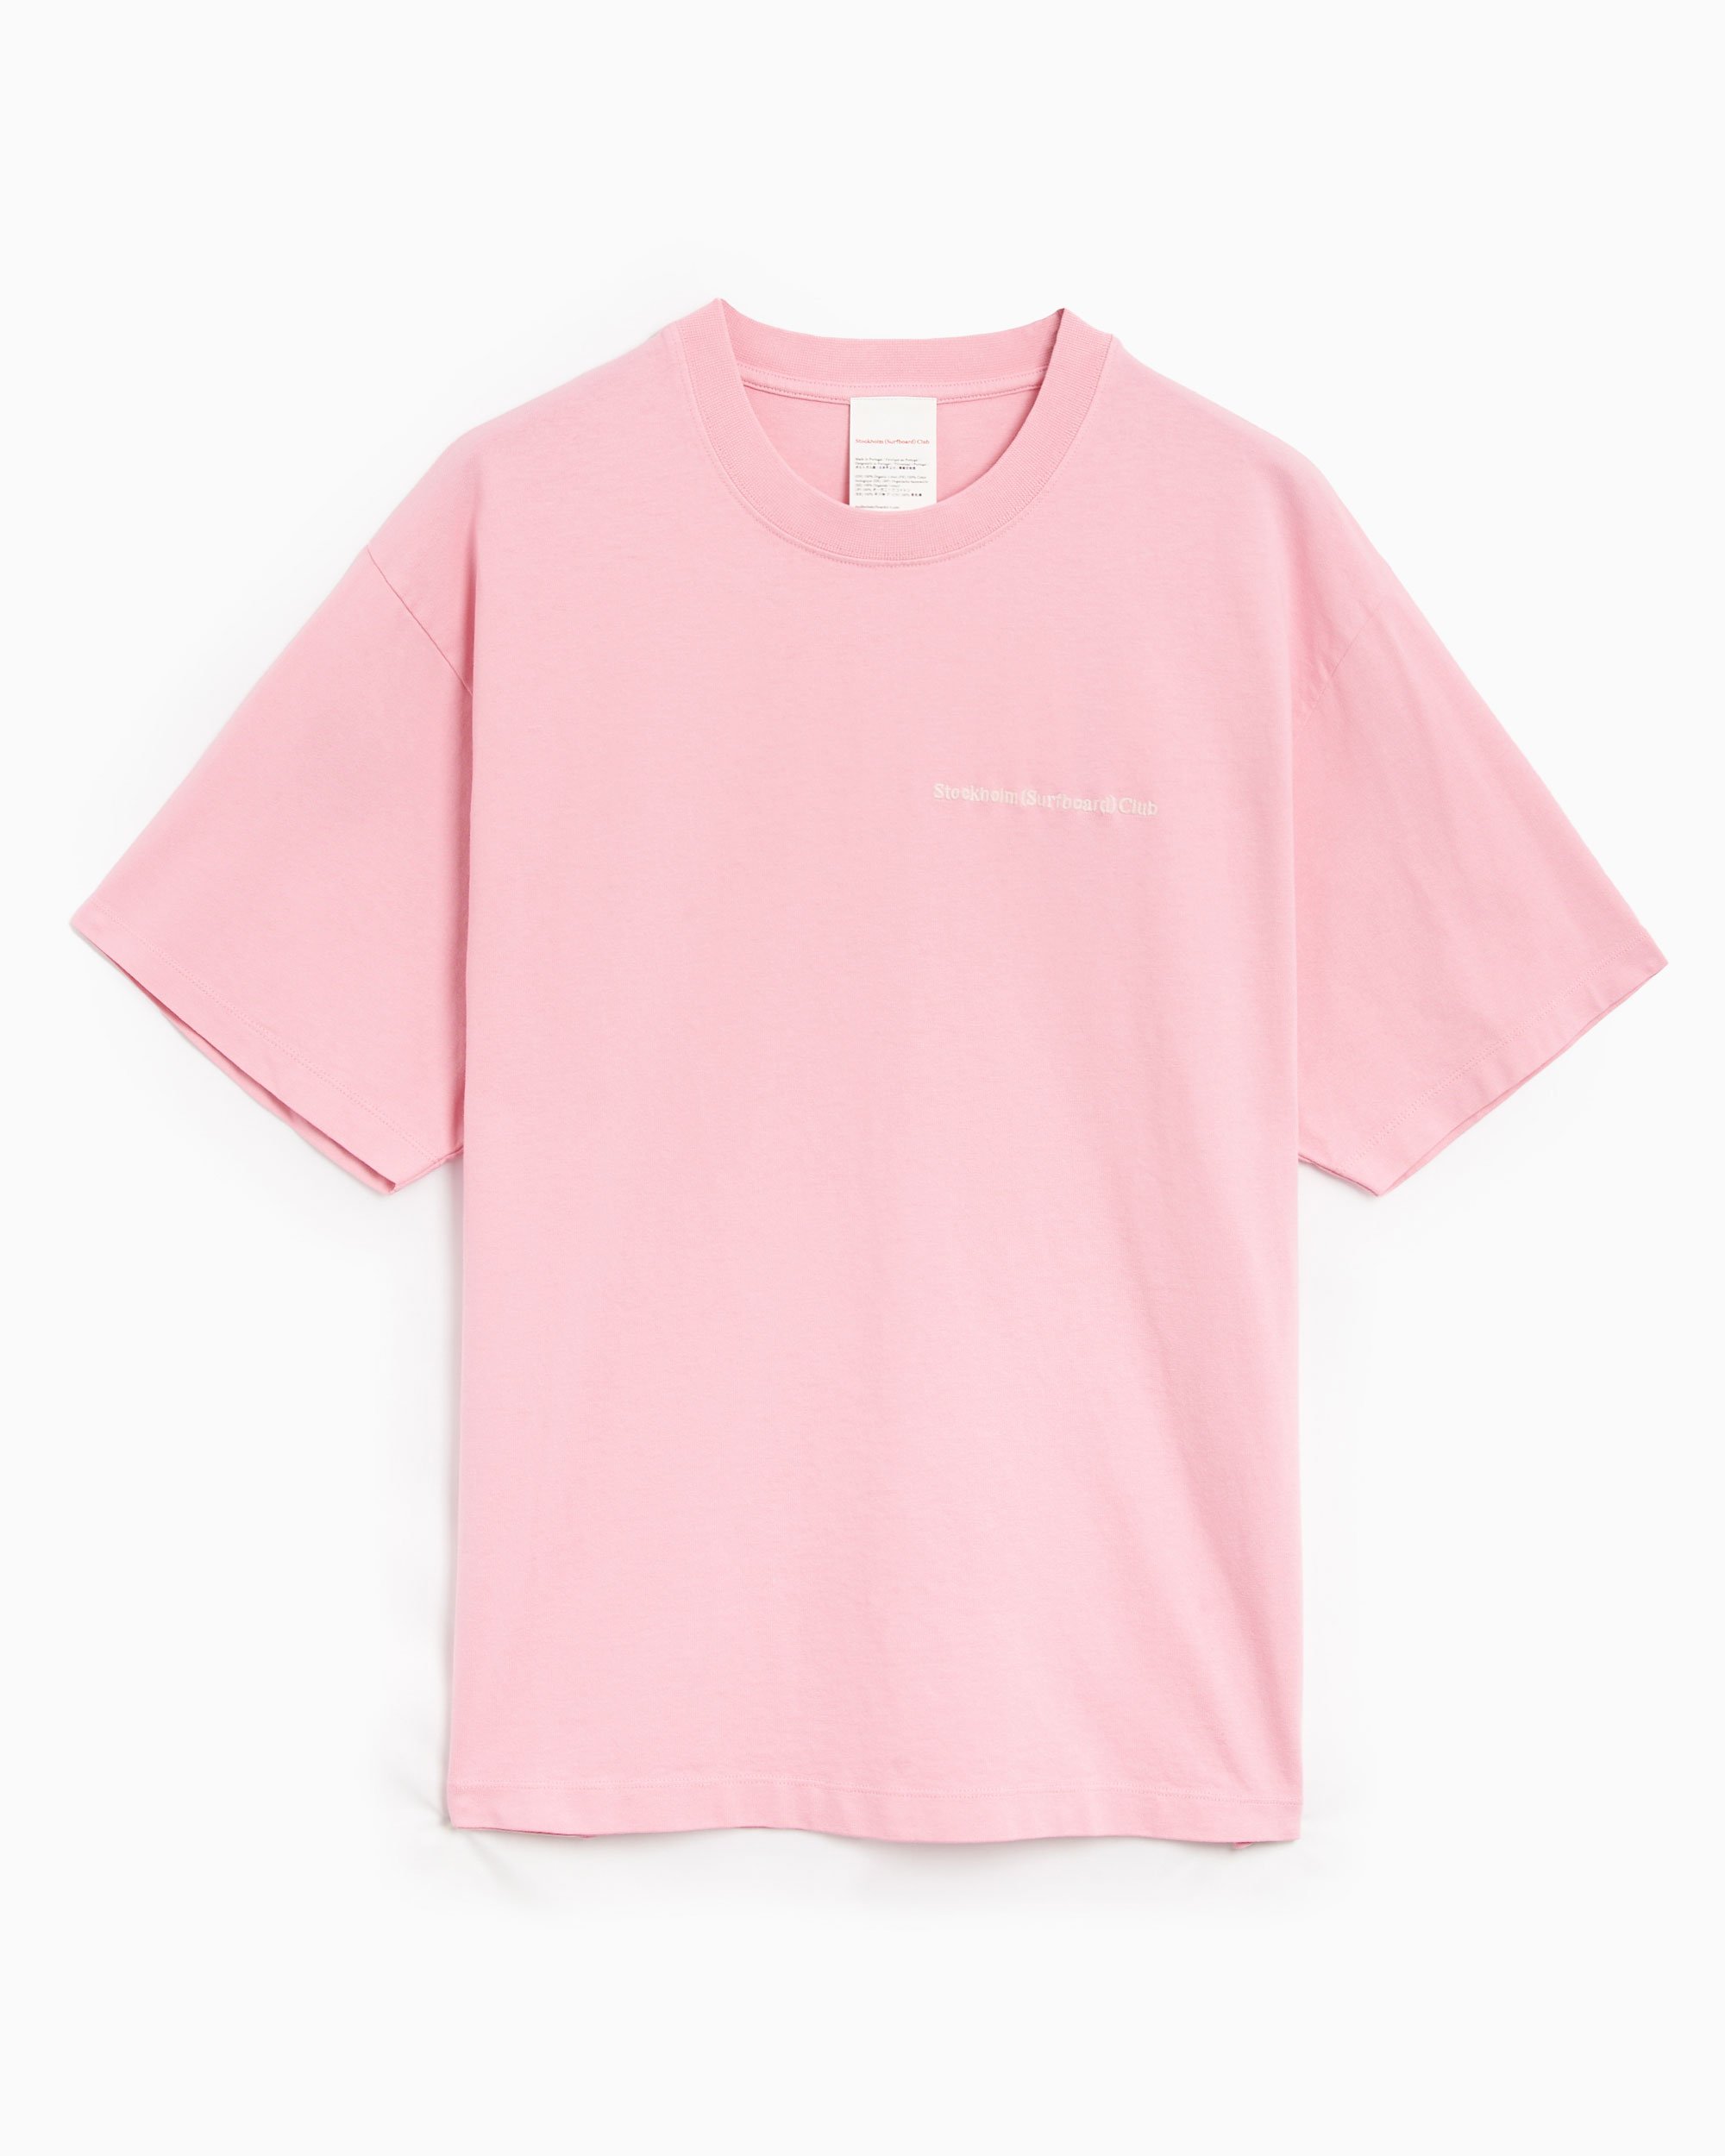 Stockholm (Surfboard) Club Leaf Men's T-Shirt Pink U1000042-Pink 